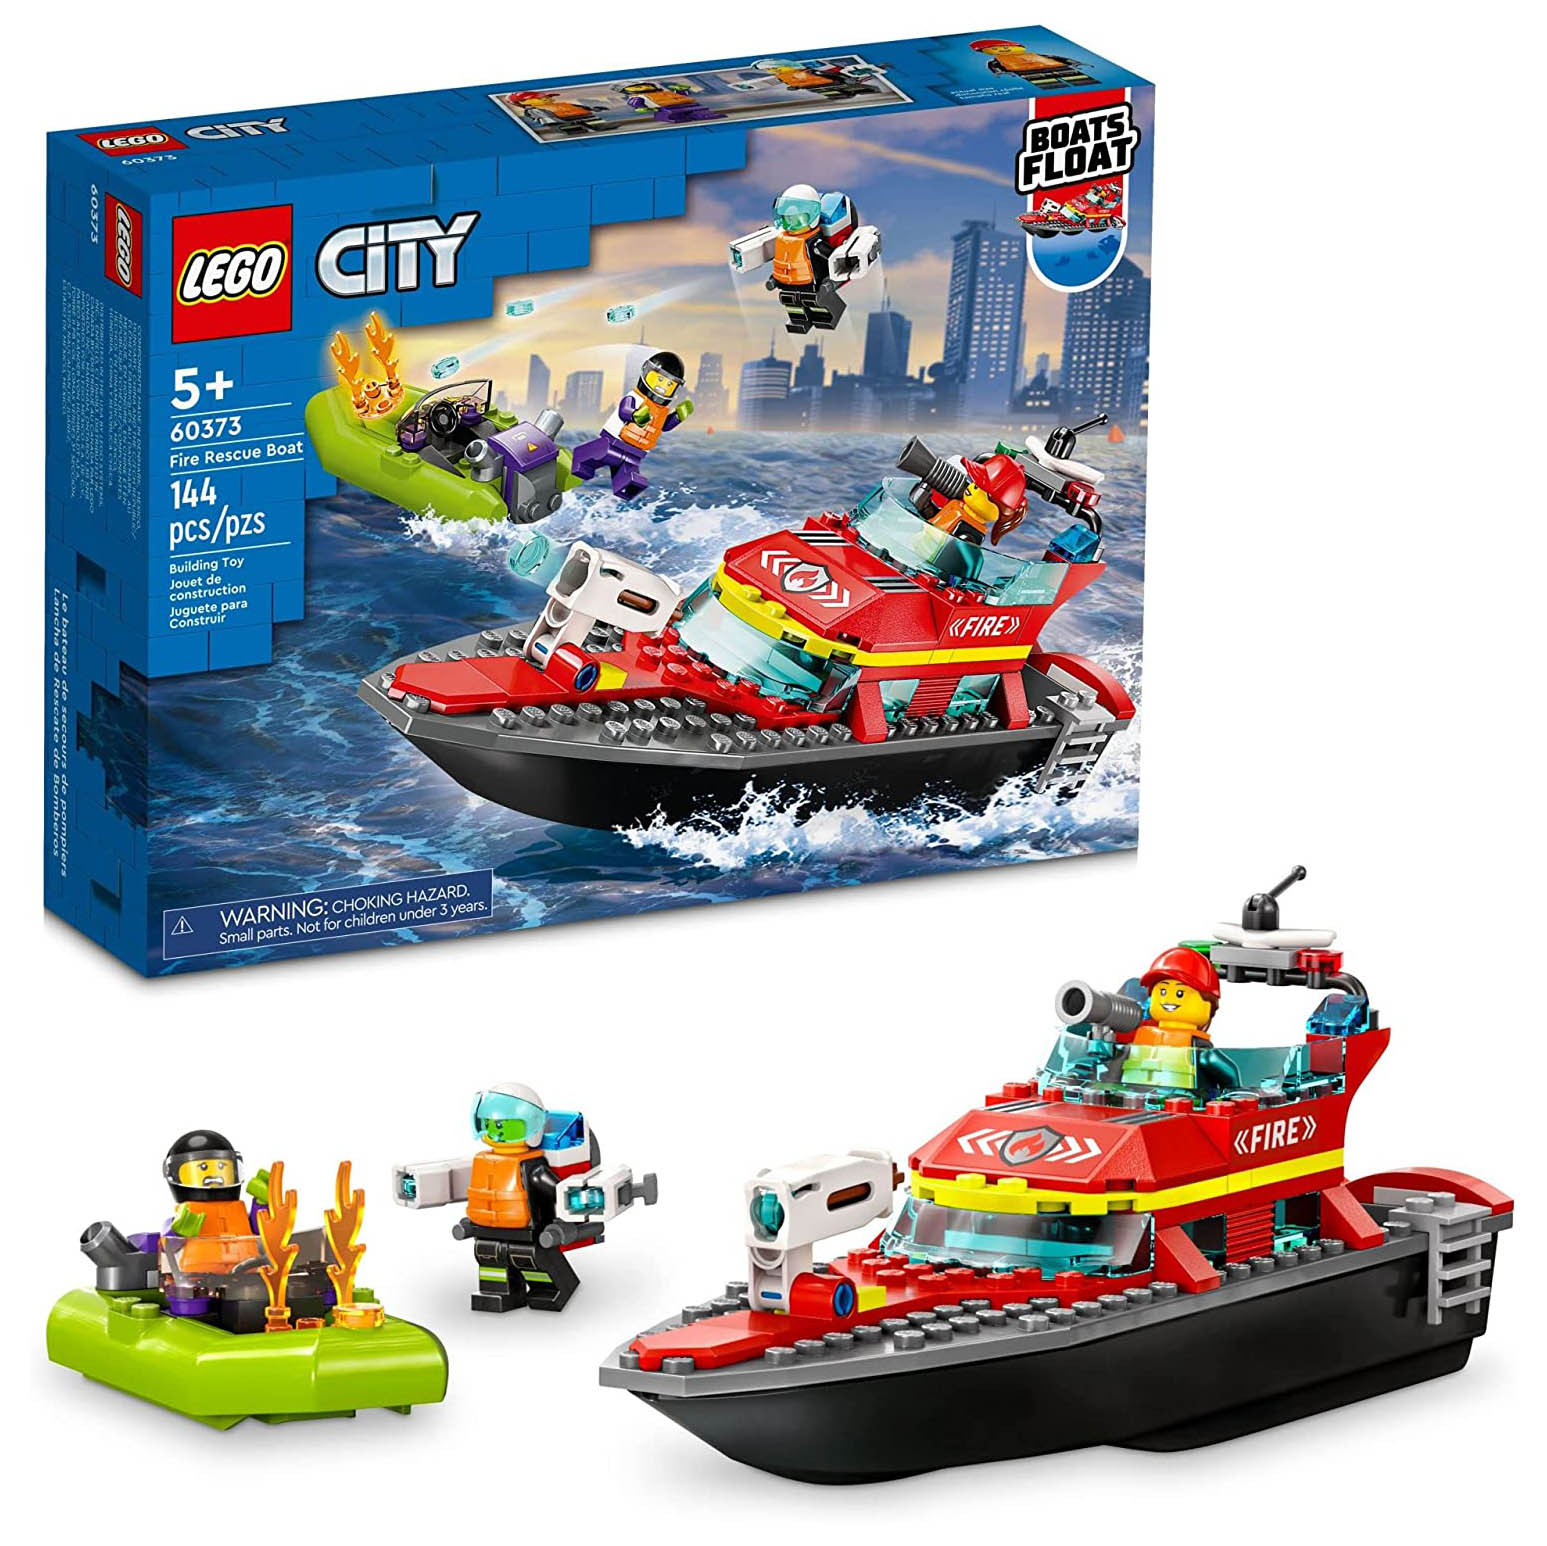 Конструктор LEGO City Пожарная спасательная лодка, 144 детали, 60373 конструктор lego city fire 60247 лесные пожарные